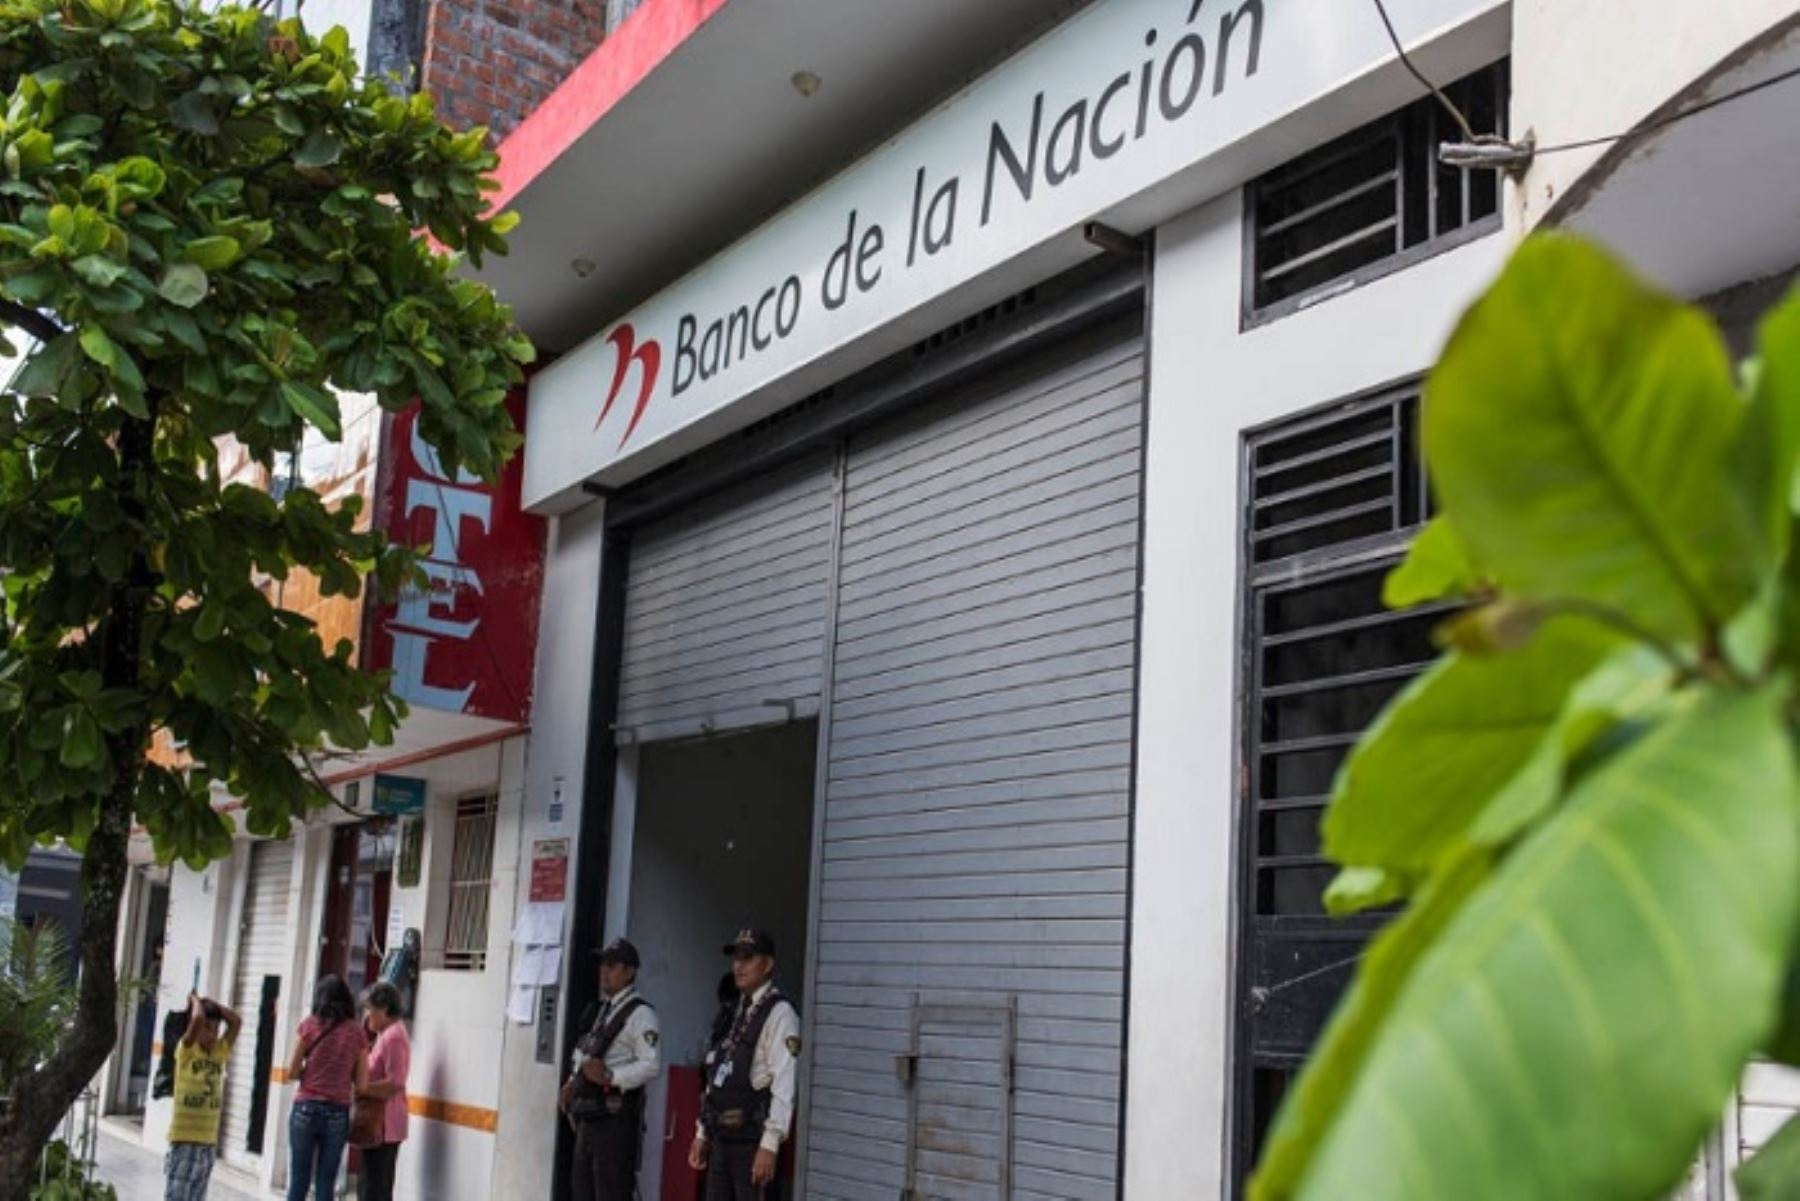 El horario de atención de la agencia del Banco de la Nación en Tingo María (Huánuco) es de lunes a viernes de 8:30 a 17:30 horas y los sábados de 9:00 a 13:00 horas.